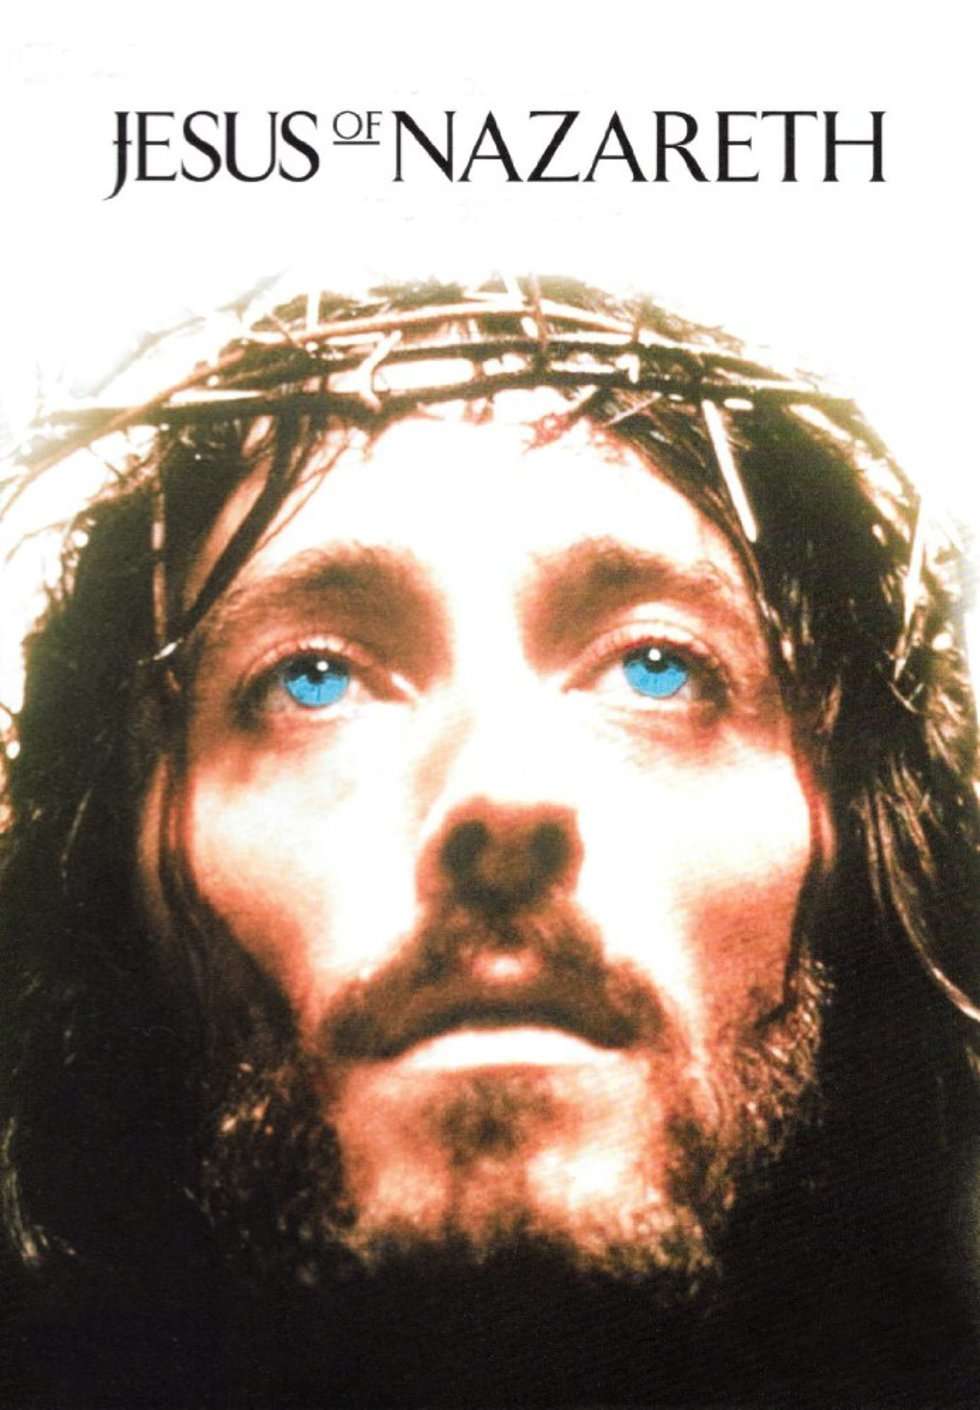  <p class="MsoNormal"><strong>&bdquo;Jezus z Nazaretu&rdquo;, reż. Franco Zeffirelli, 1977 r.</strong></p>
<p class="MsoNormal">Nakręcone w 1977 roku, epickie i trwające ponad 6 godzin dzieło Franco Zeffirelliego do dziś uchodzi za jeden z najlepszych, jeśli nie najlepszy film biblijny poświęcony życiu Jezusa Chrystusa. Ten miniserial zrealizowano z olbrzymim rozmachem oraz imponującą na owe czasy scenografią. Wyznacznikiem jakości tej produkcji jest r&oacute;wnież kapitalna obsada. Chrystusa rewelacyjnie zagrał Robert Powell, a na drugim planie występują takie gwiazdy, jak: Anne Bancroft, Claudia Cardinale, Laurence Olivier, Christopher Plummer, Anthony Quinn, Peter Ustinov czy Ian Holm. To najbardziej szczeg&oacute;łowy filmowy opis życia i męki Chrystusa jaki kiedykolwiek zrealizowano.</p>